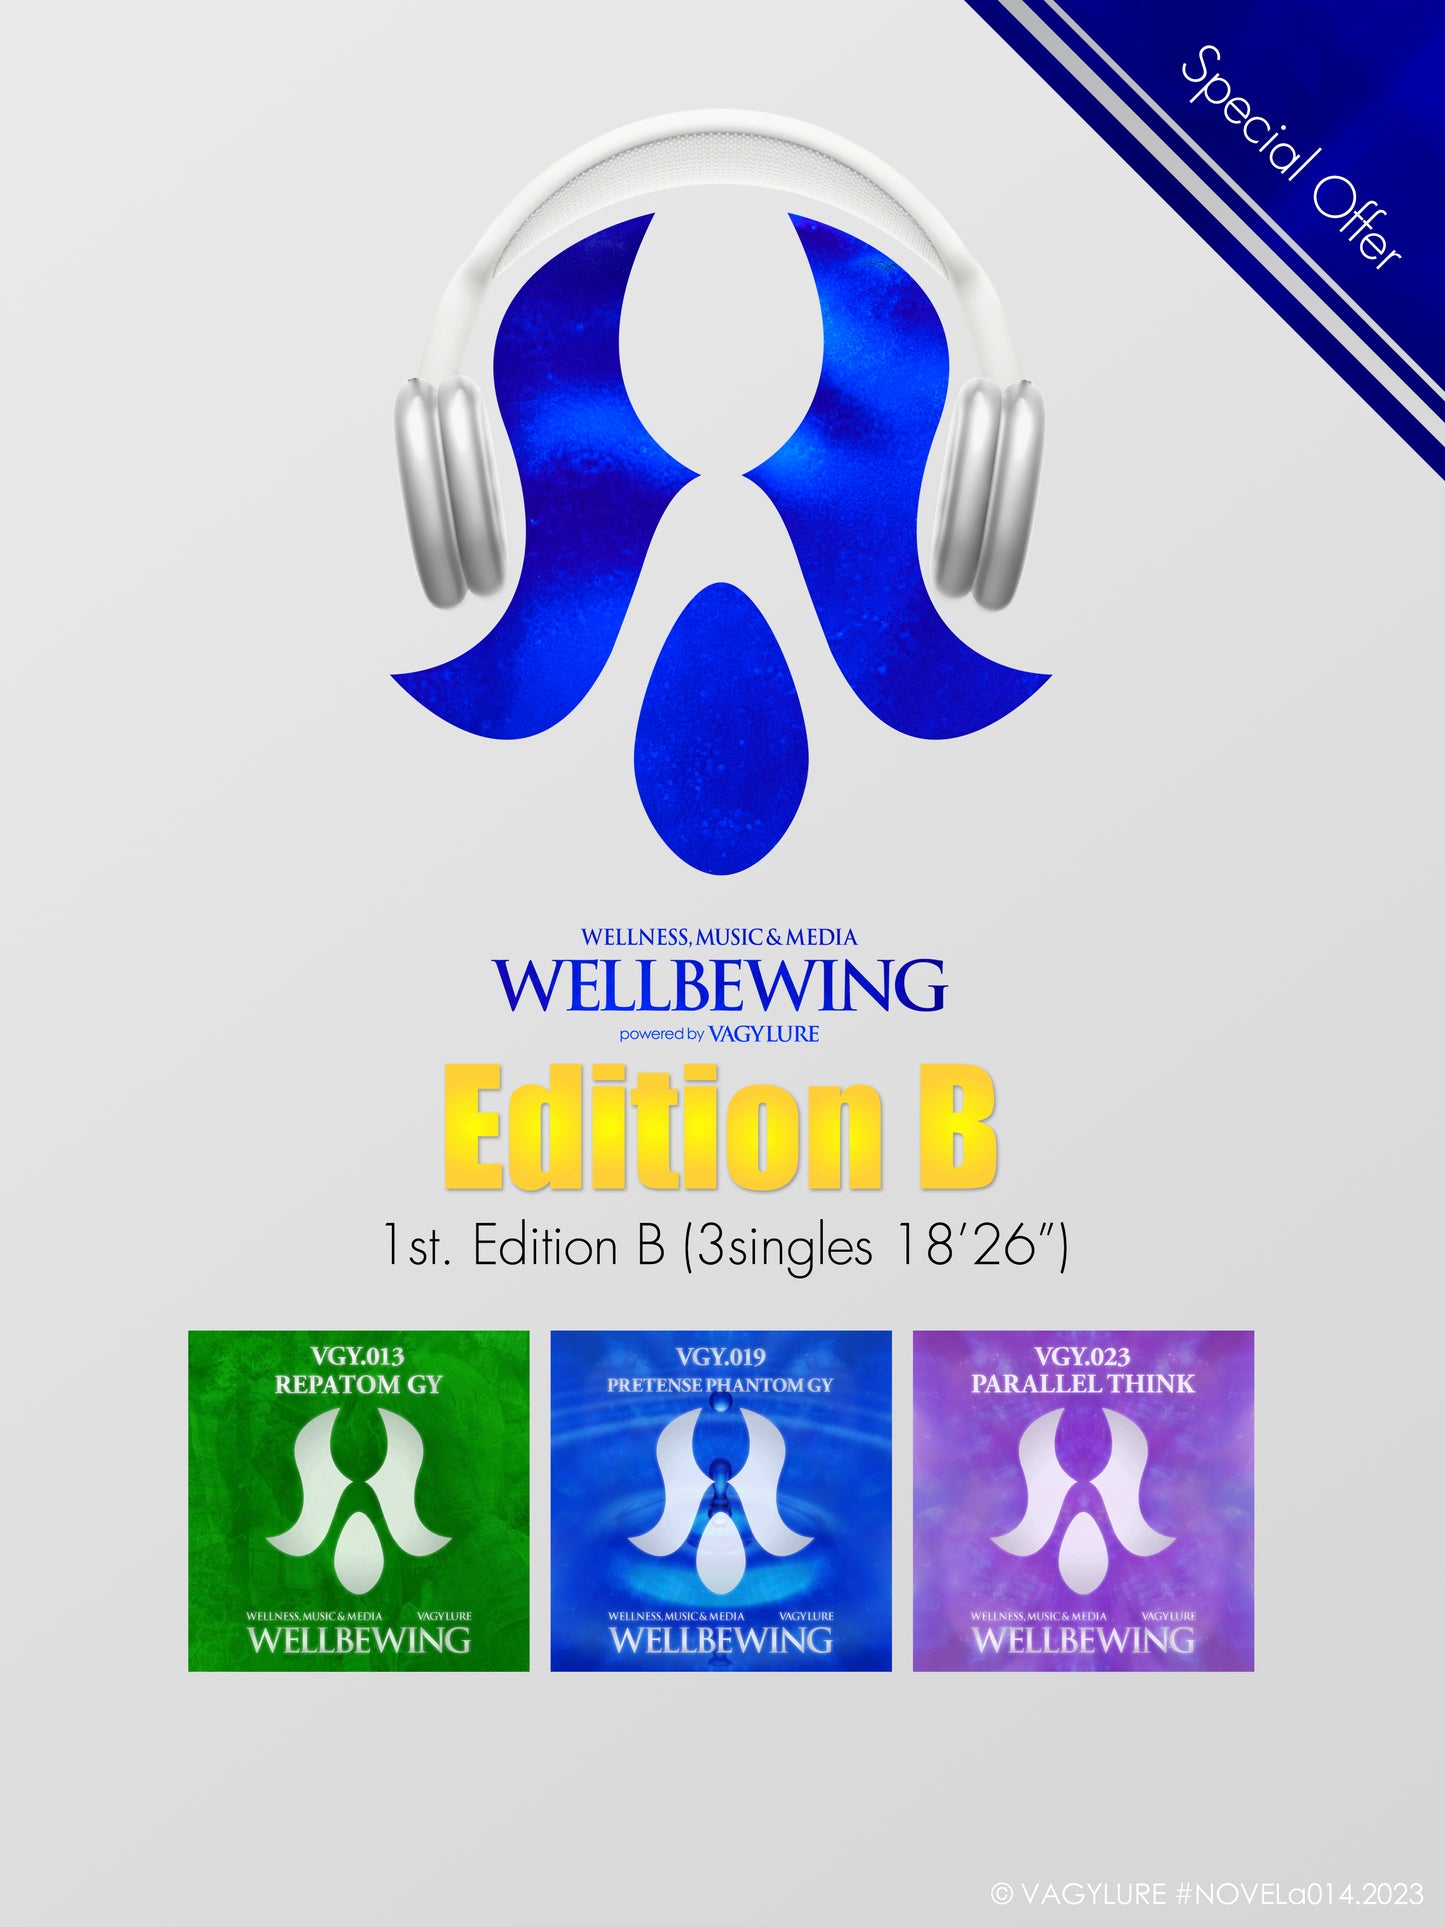 商用BGM WELLBEWING® VGY series 1st Edition B : ホテル・美容サロン・美容室・ヨガスタジオ 店内音楽 : 3曲（18分26秒）